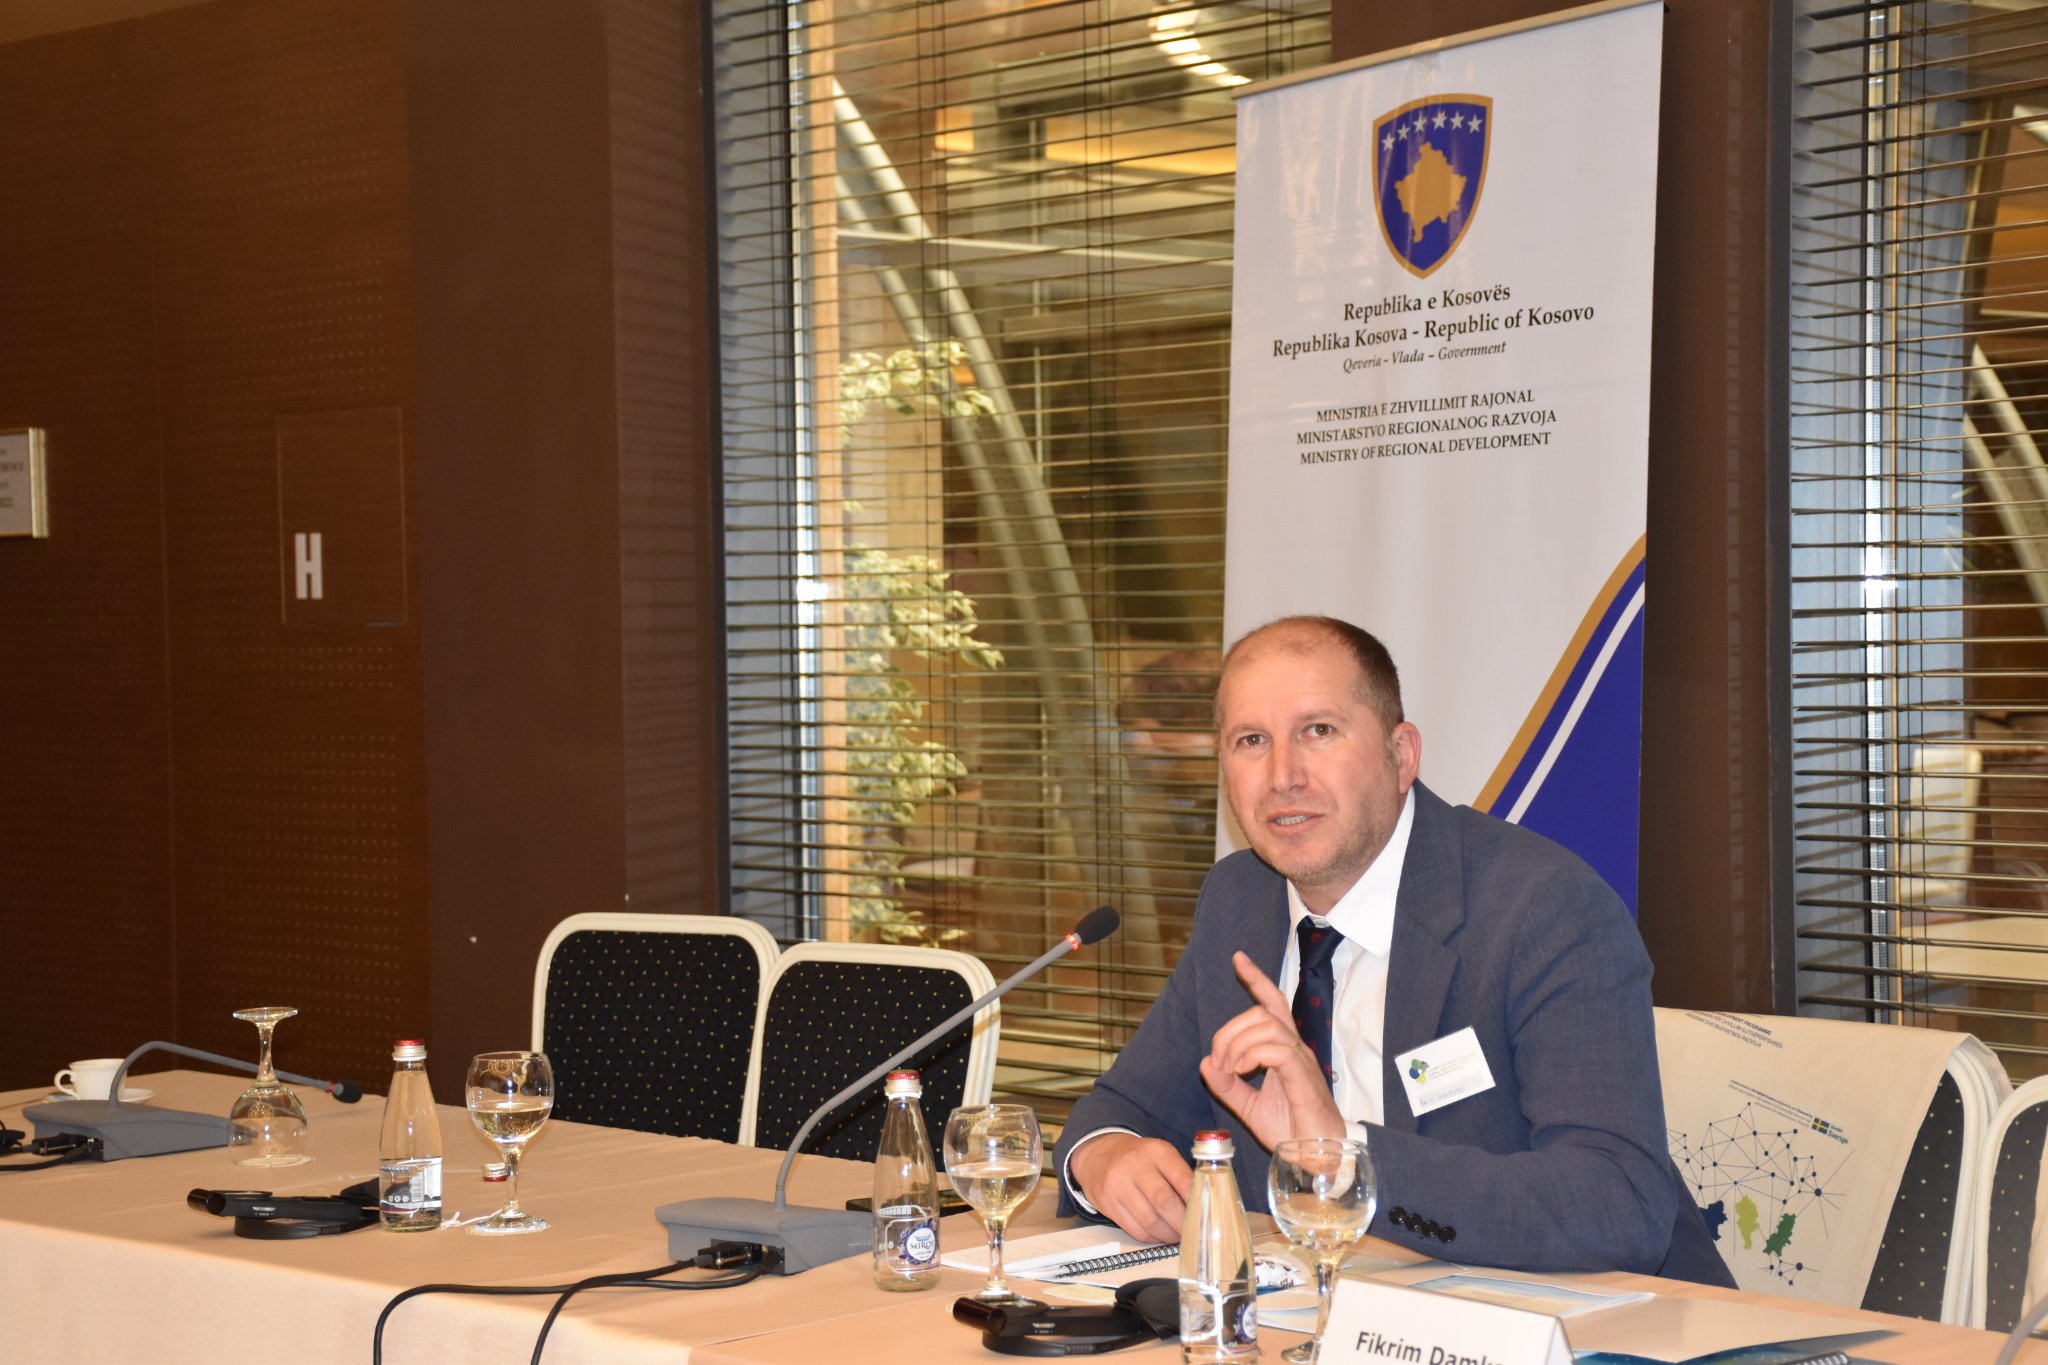 Përfundon punëtoria “ Nxitja e Zhvillimit Rajonal të Qëndrueshëm dhe të Balancuar përmes Projekteve të Investimeve Kapitale” e cila u organizua nga Ministria e Zhvillimit Rajonal (MZHR) në partneritet me UN-Habitat Kosovë